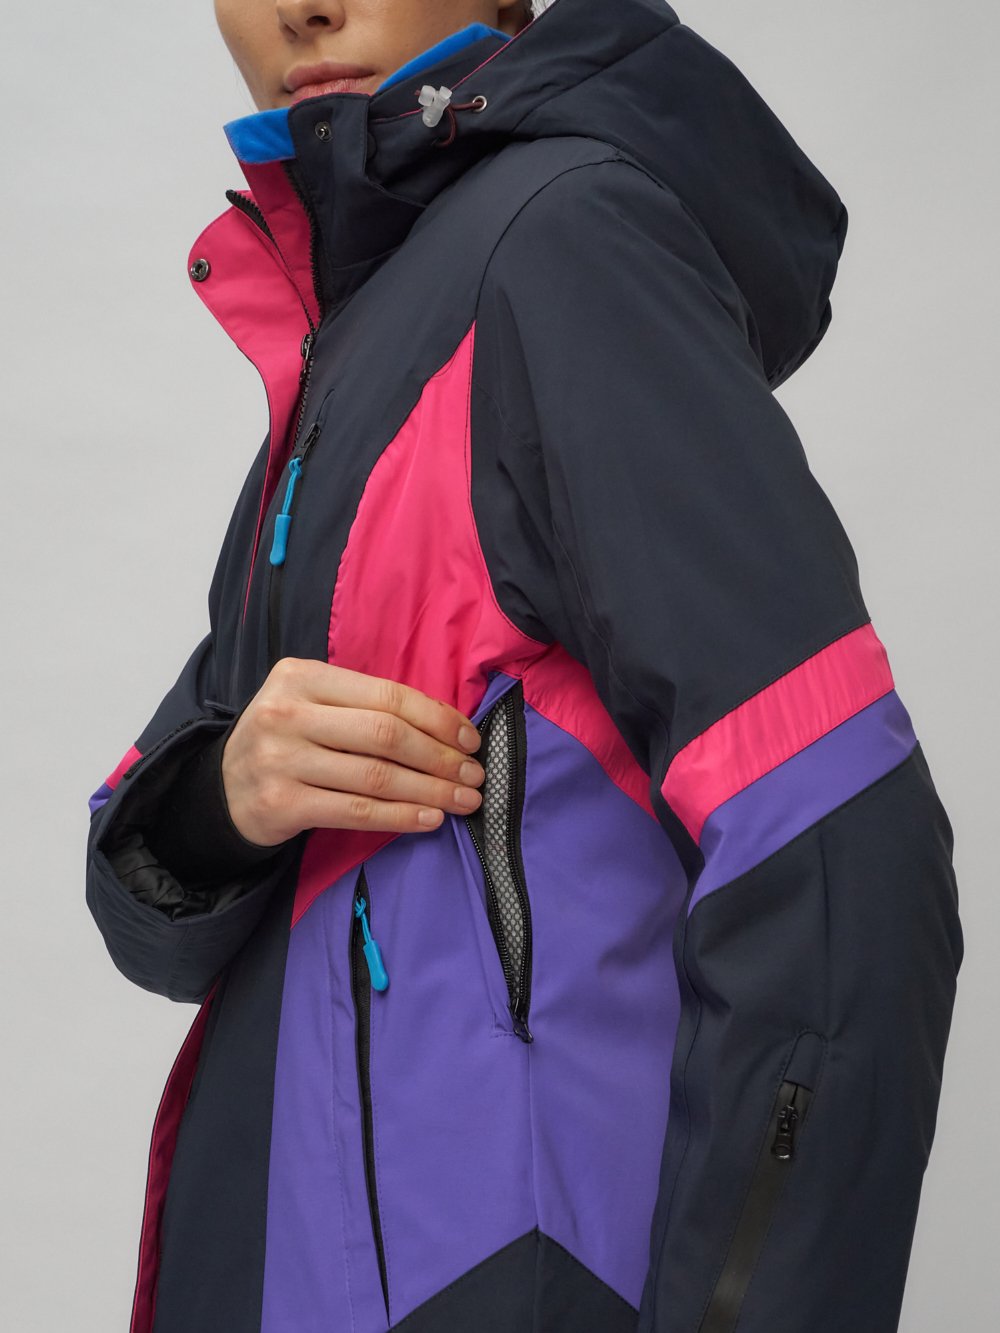 Купить горнолыжный костюм женский оптом от производителя недорого в Москве 02201TS 1